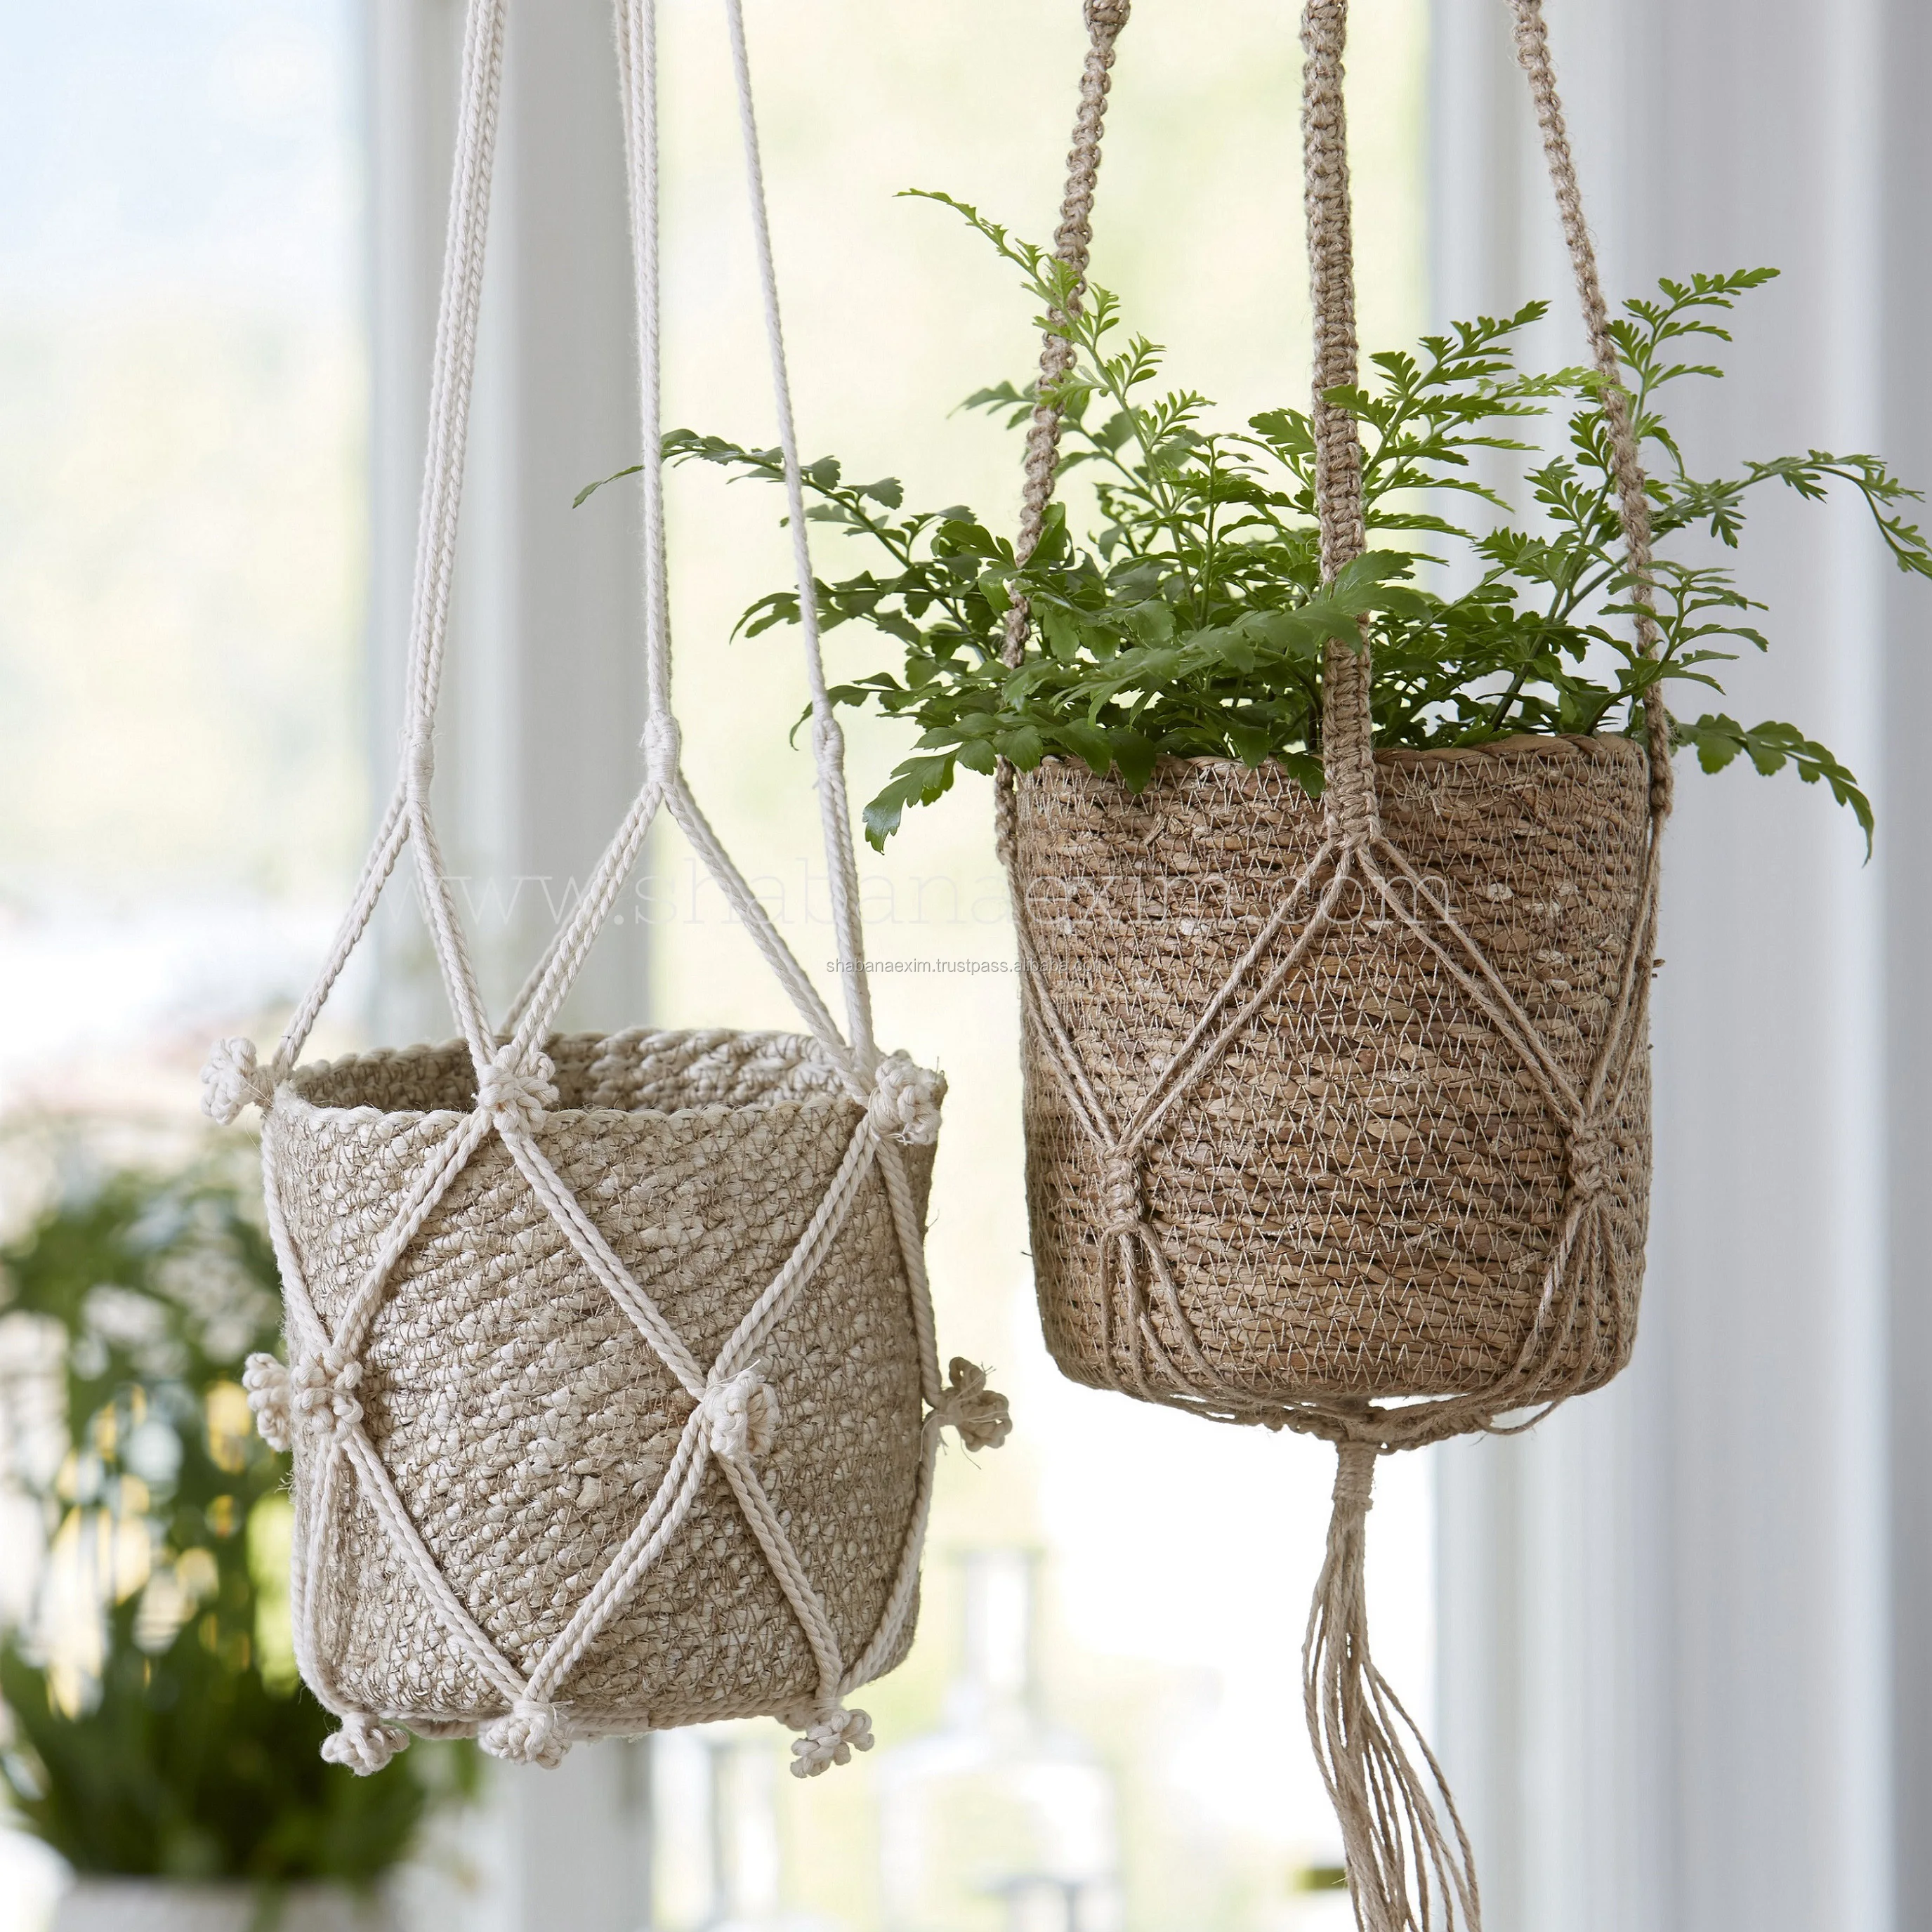 Natural Handcrafted Macrame Window Jute Plant Basket Pot Holder Hanging Decor 